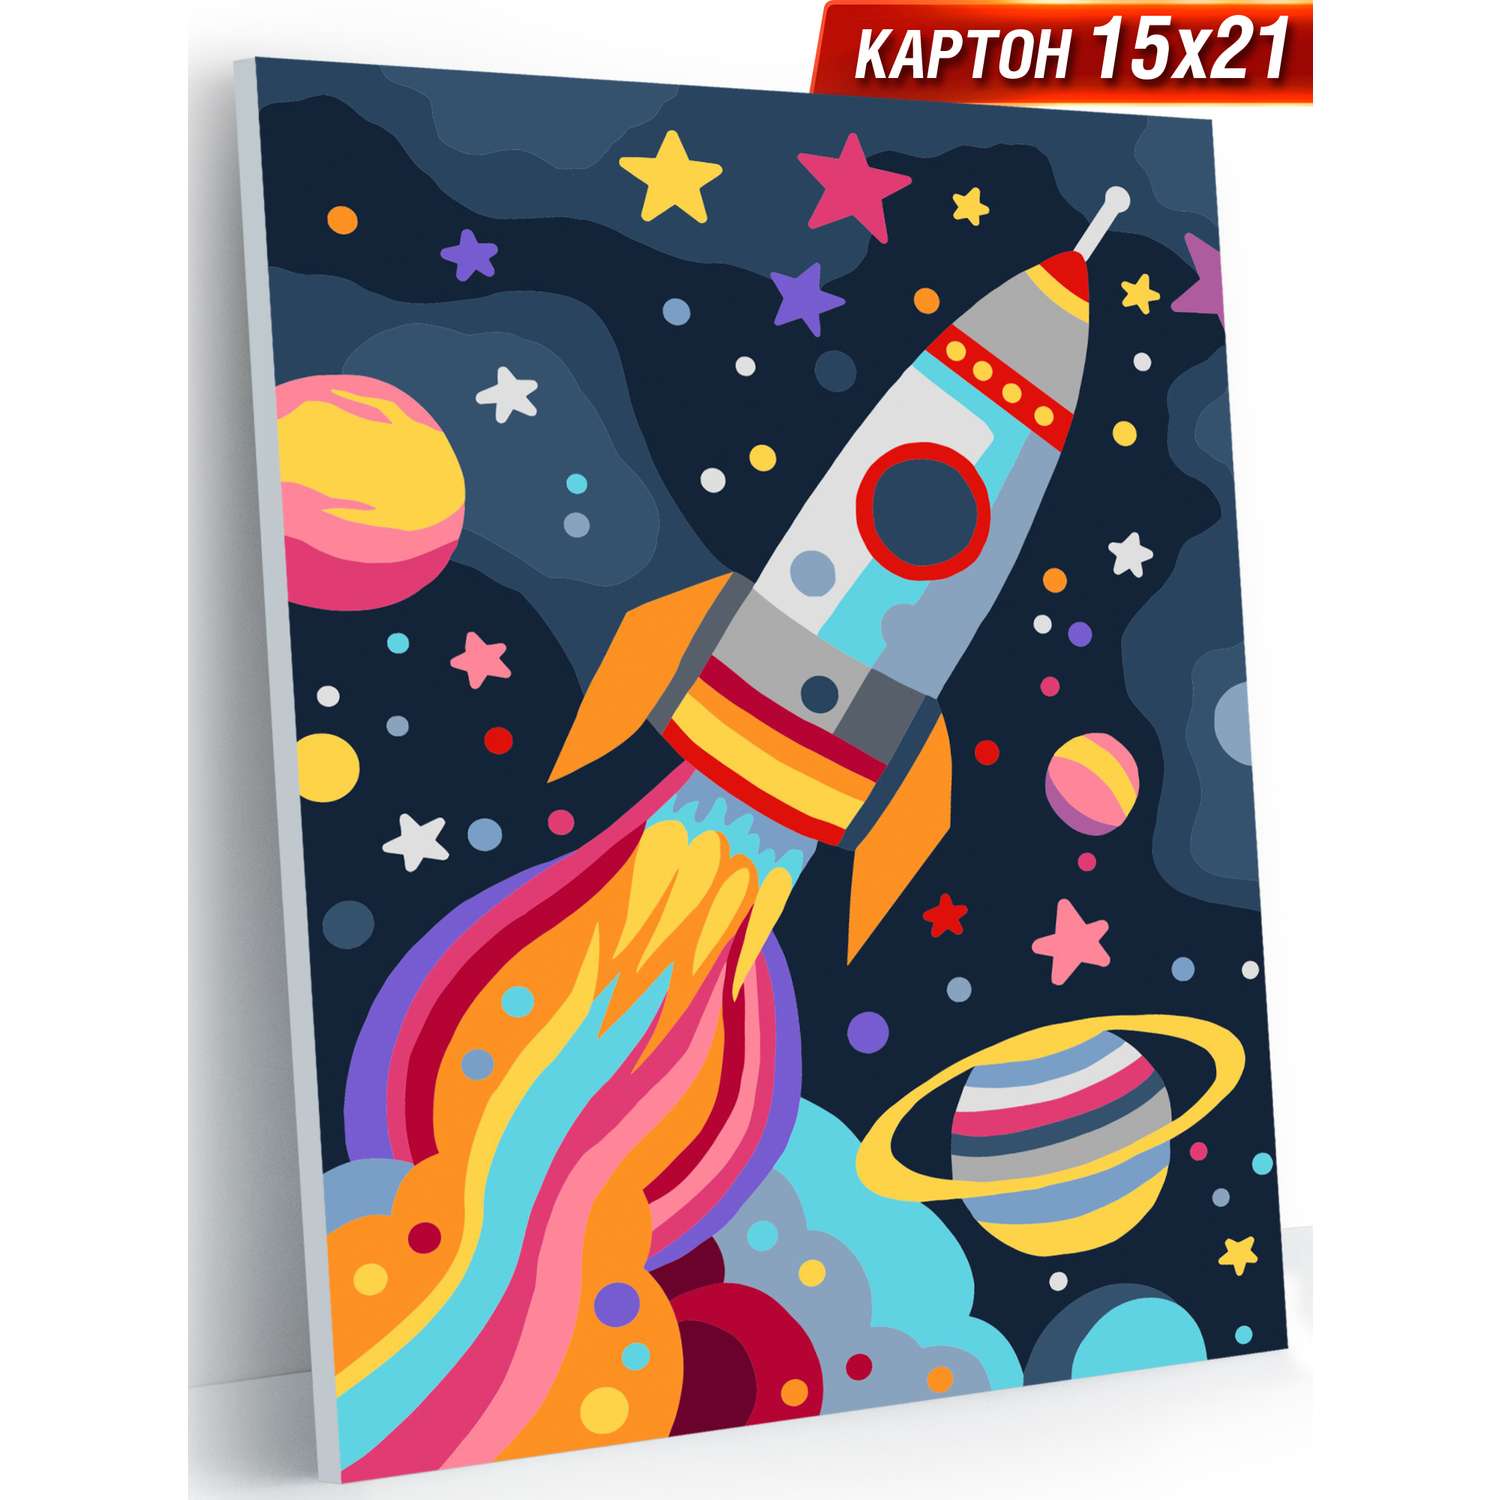 Картины по номерам Hobby Paint картон 15х21 см Космическая ракета - фото 1